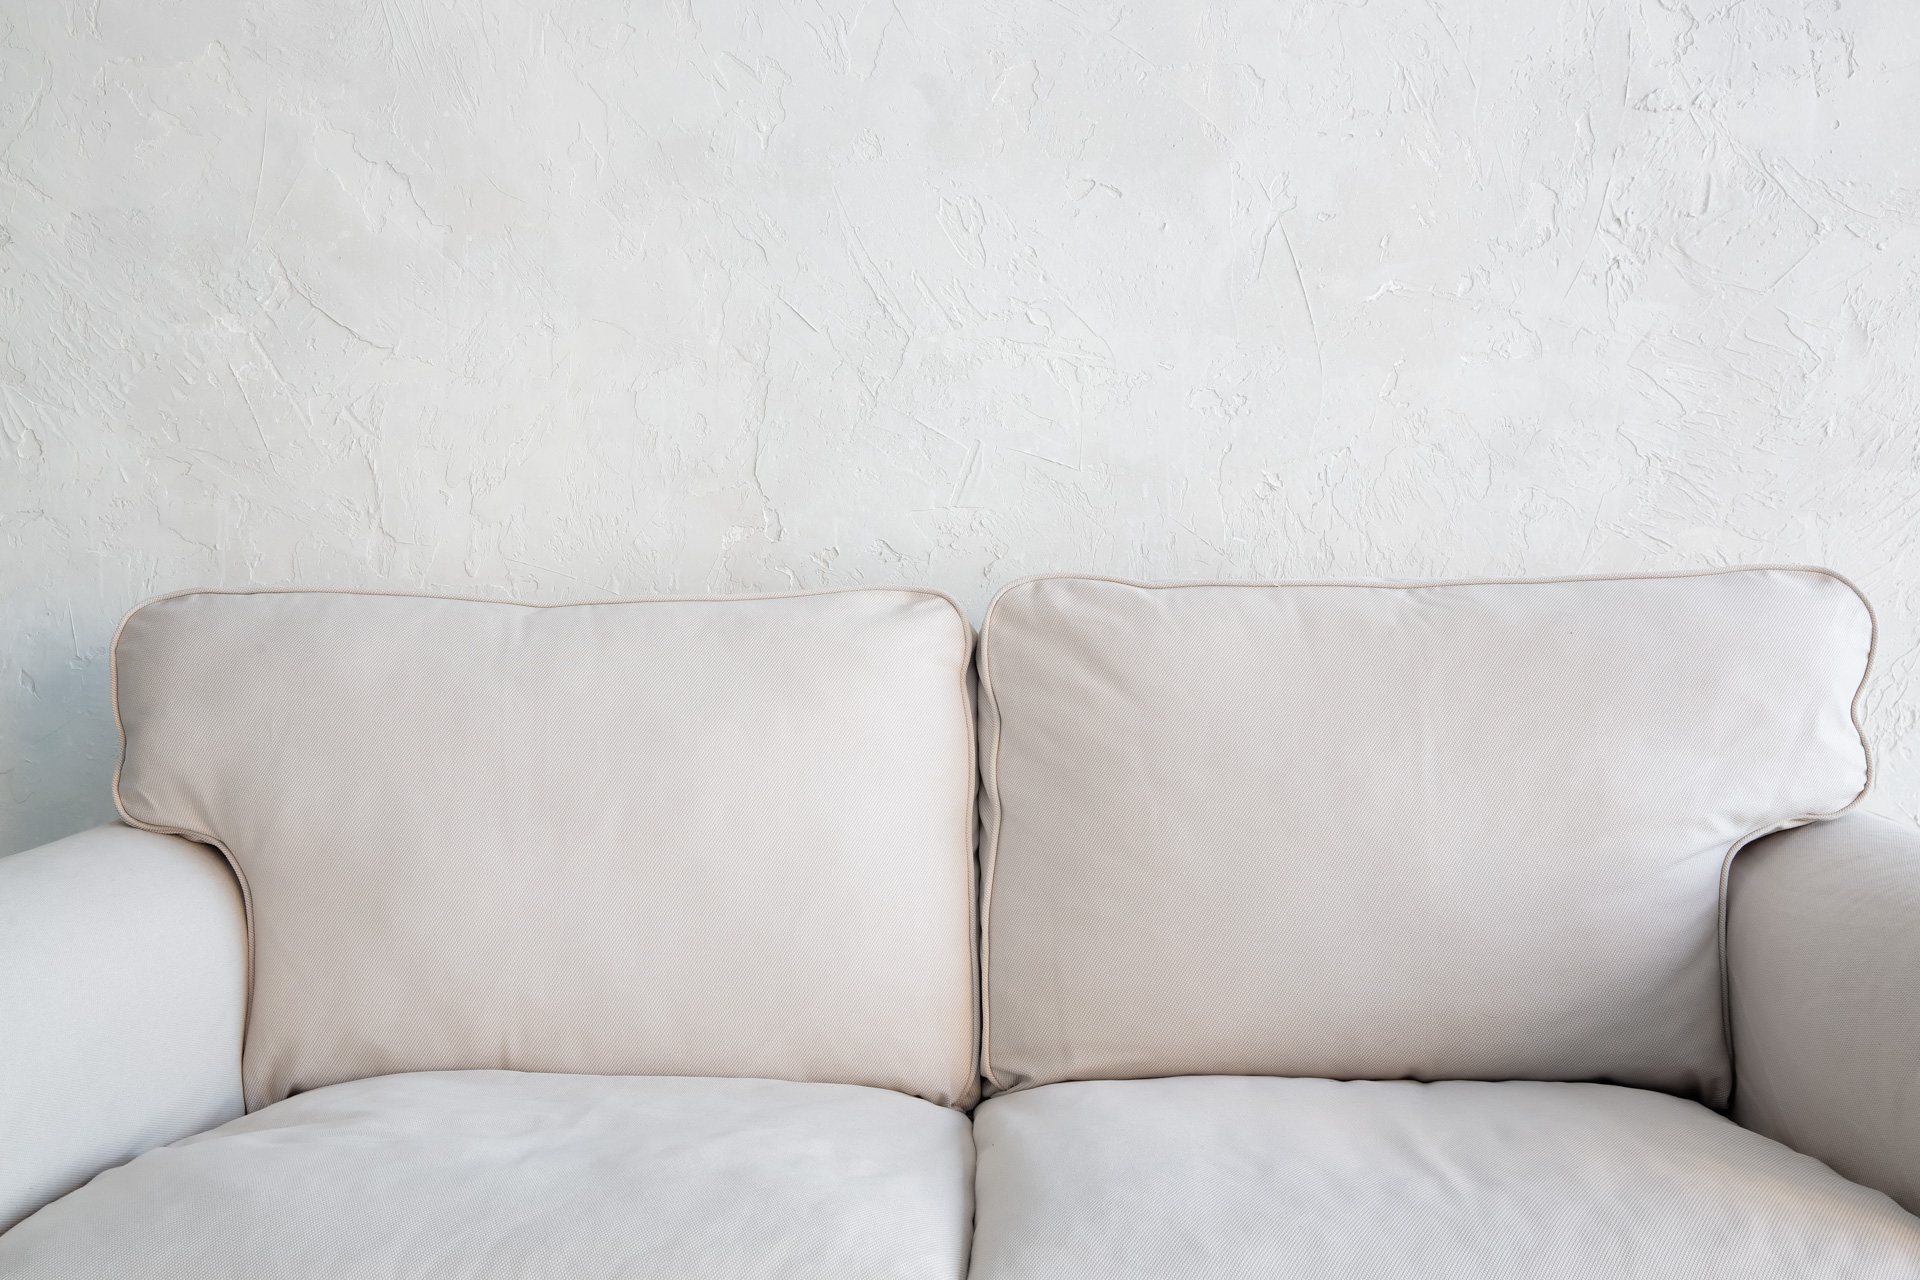 Textured wall in beige tones